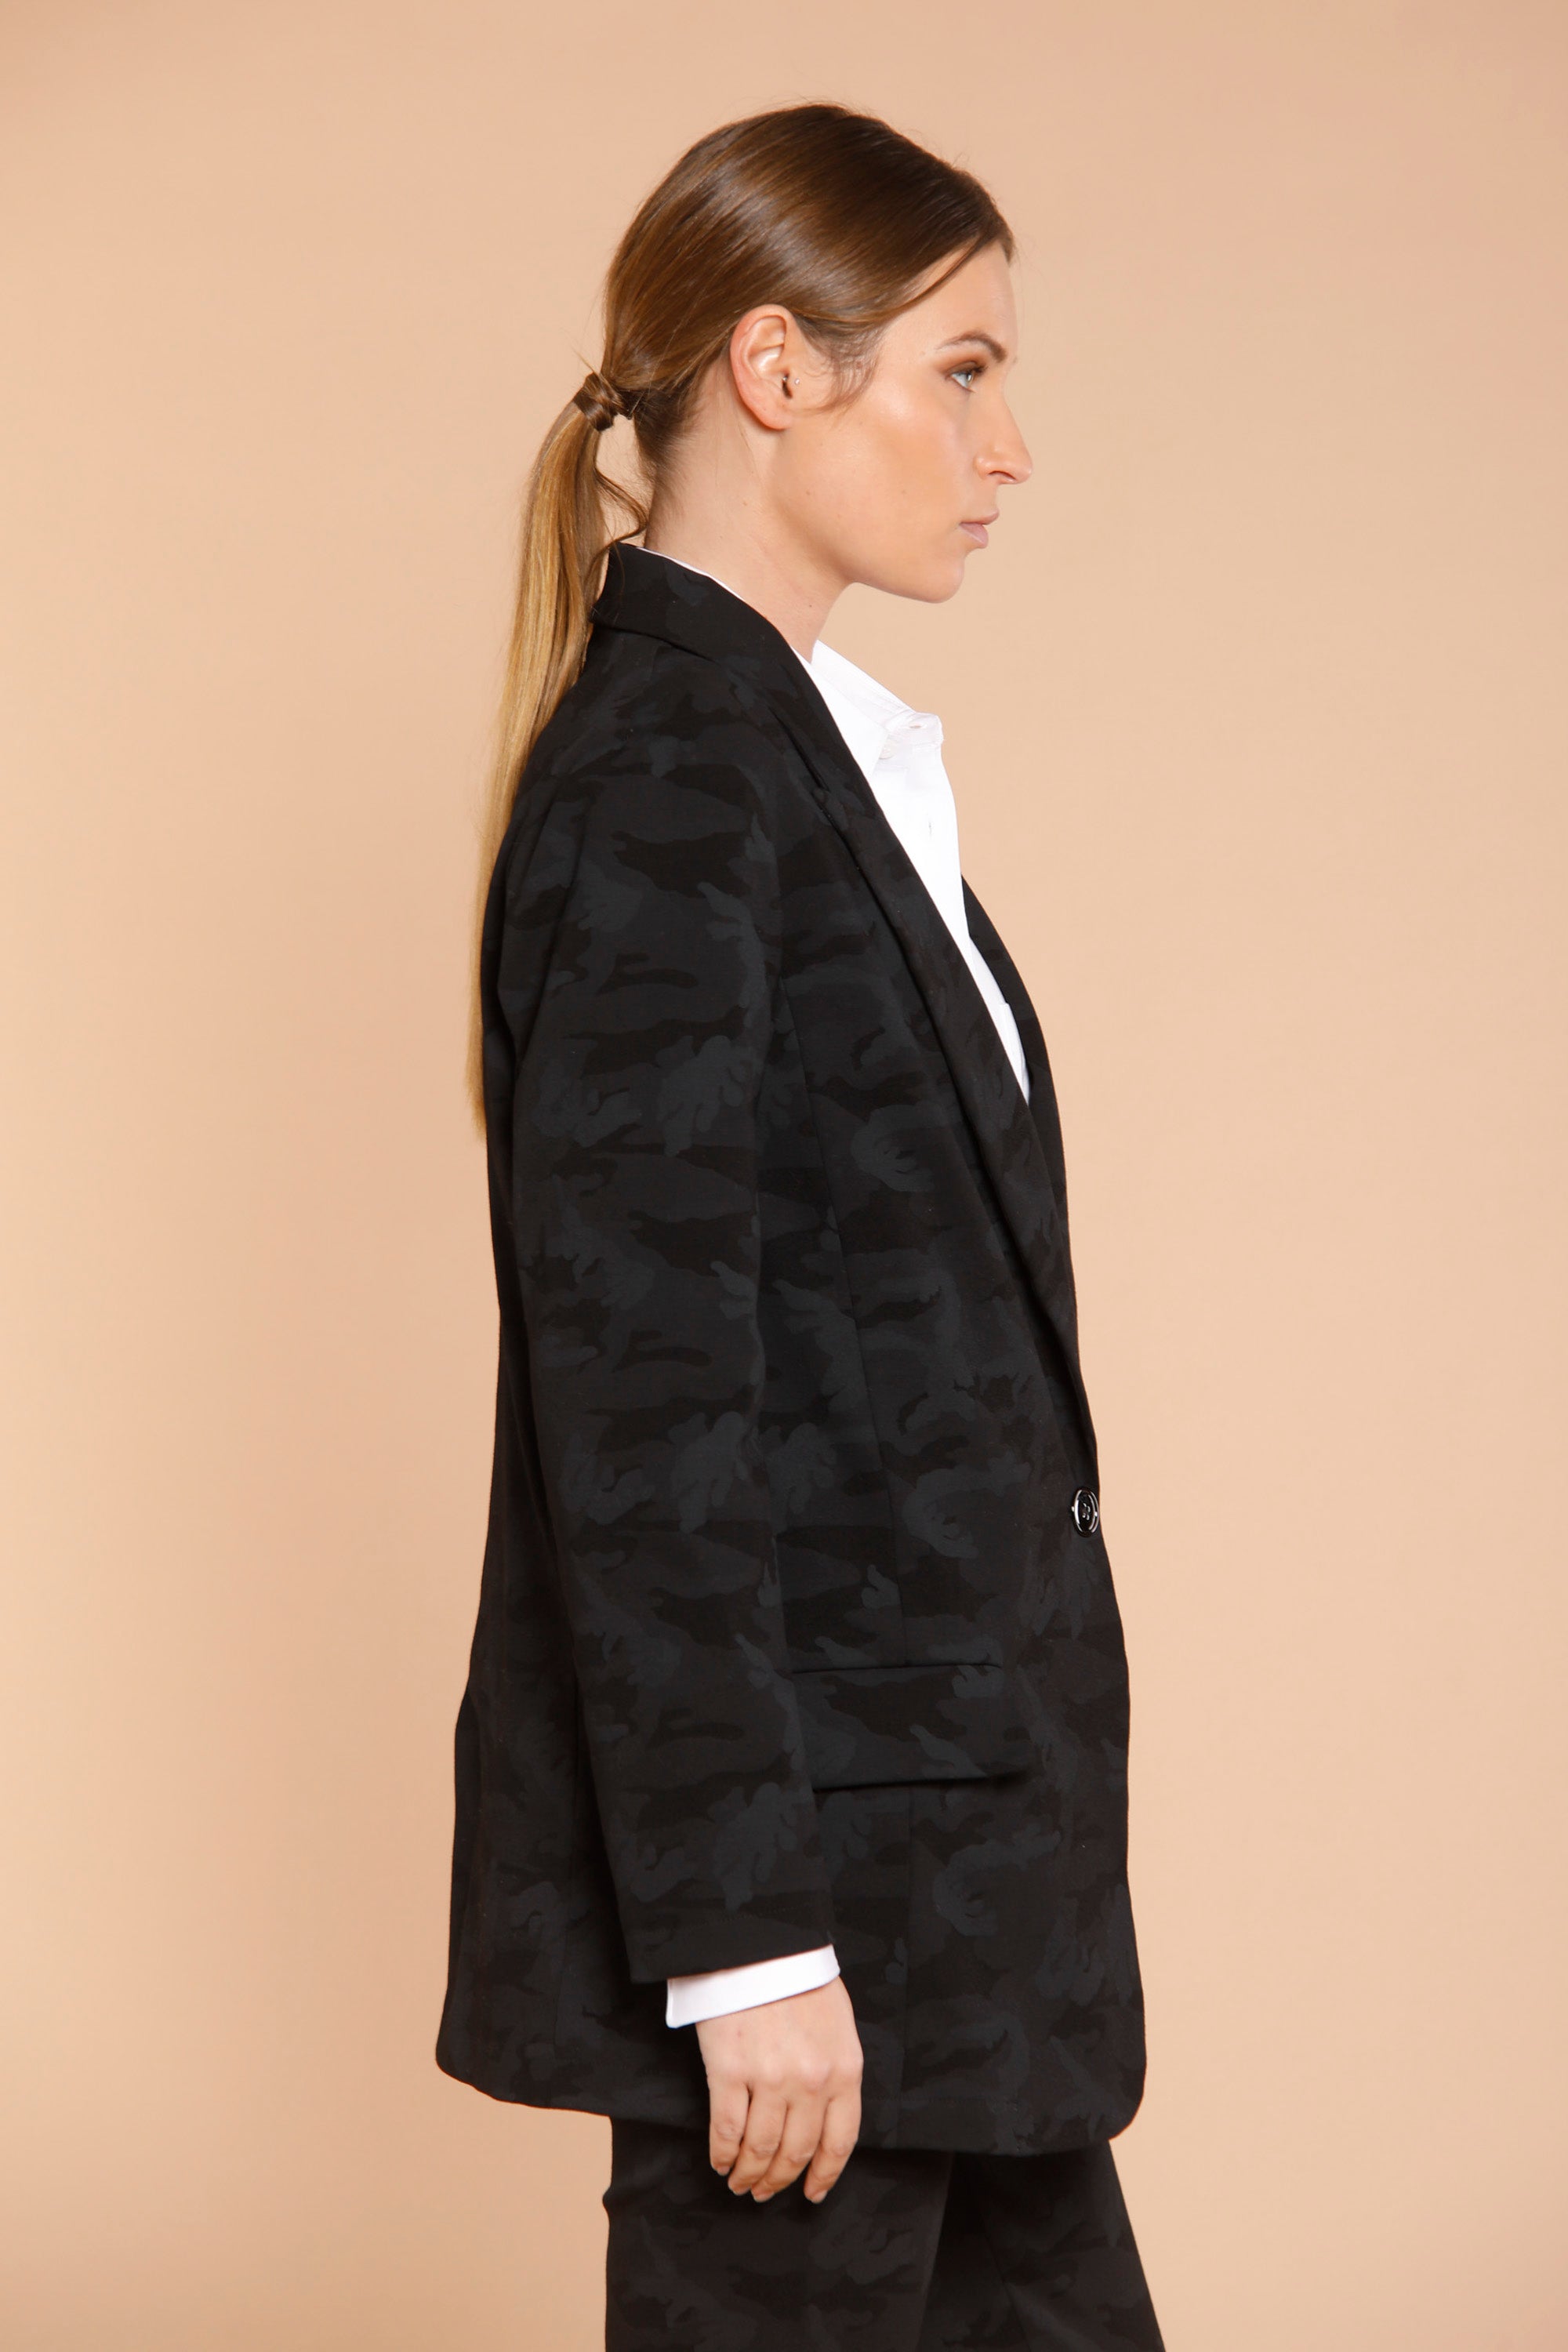 Image 4 de veste femme en jersey noir avec motif pattern modèle Letizia de Mason's